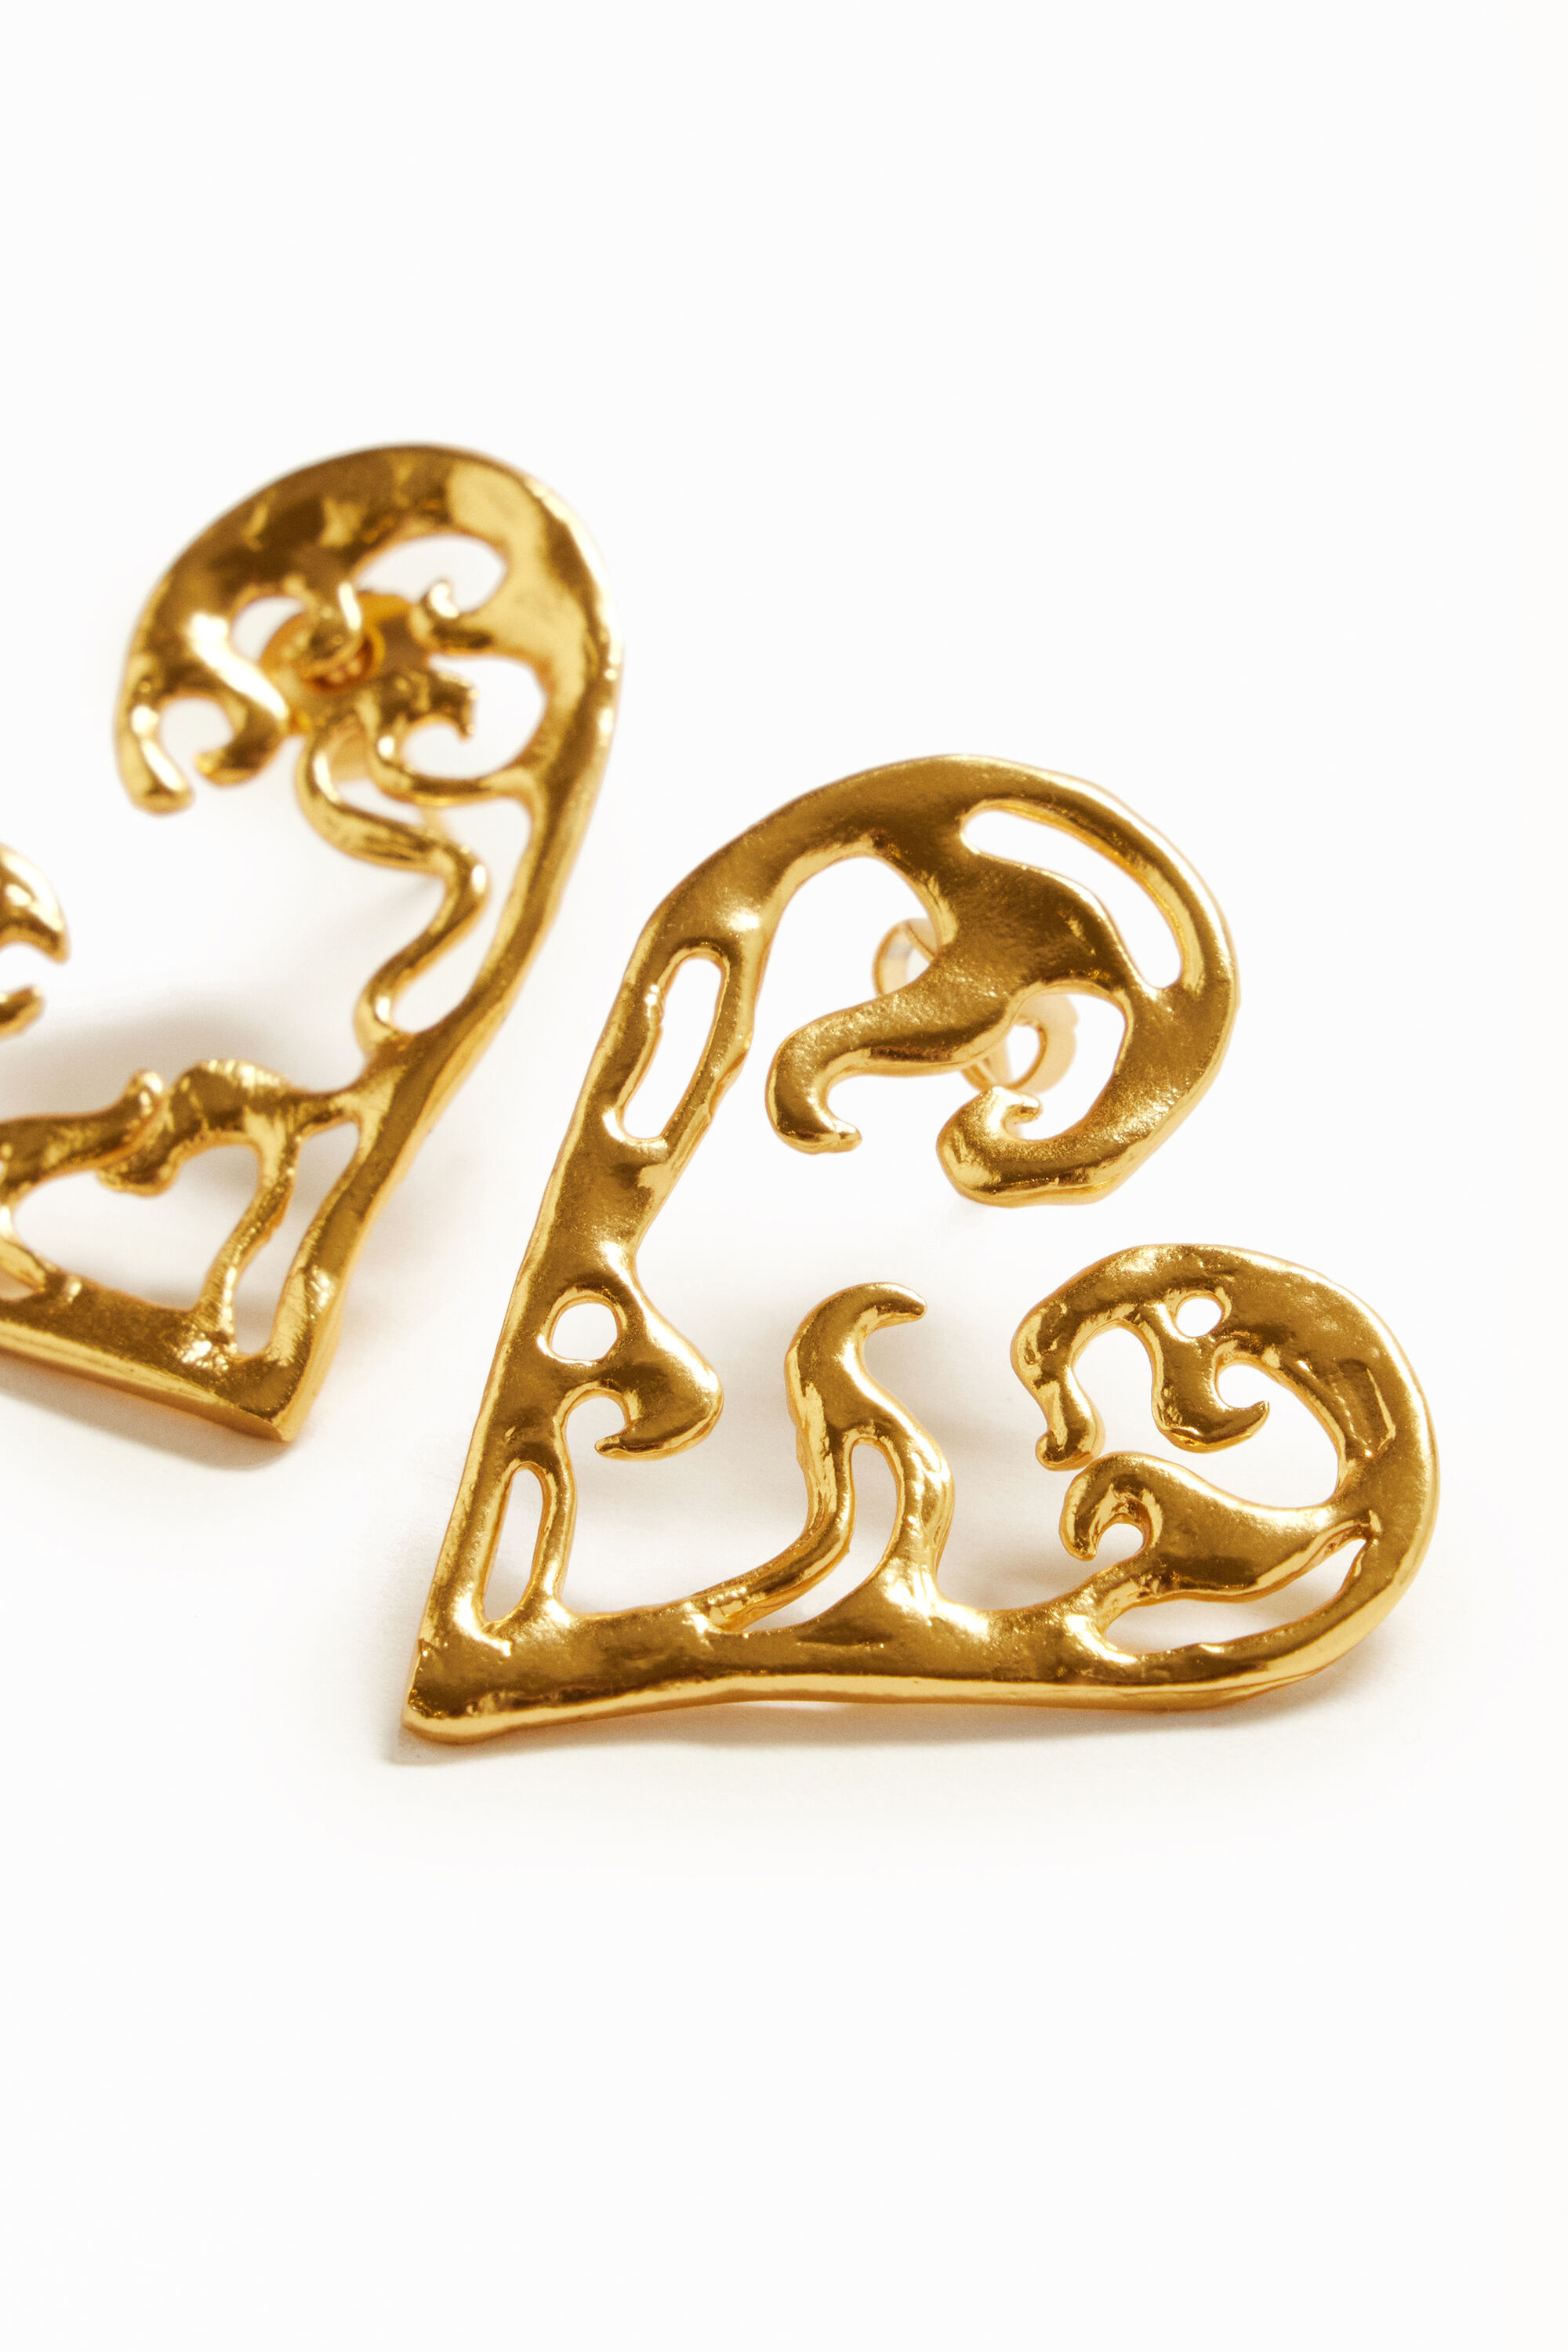 Zalio gold plated heart earrings